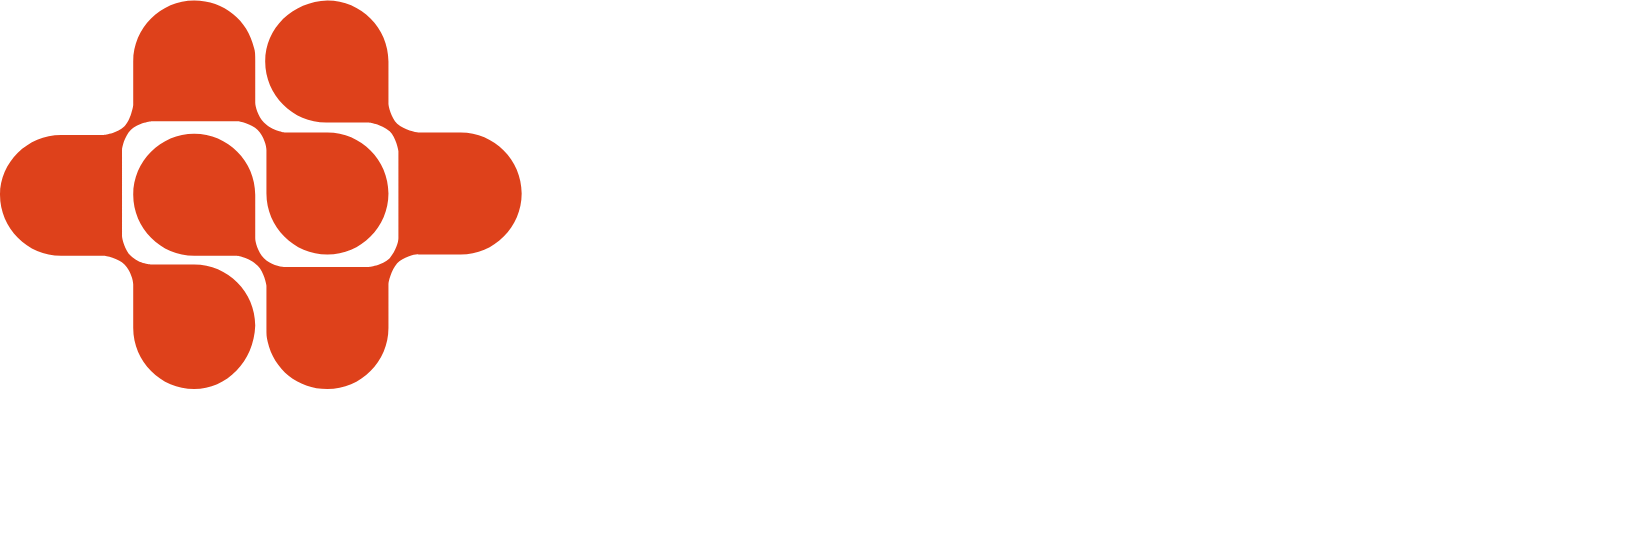 Endava logo large for dark backgrounds (transparent PNG)